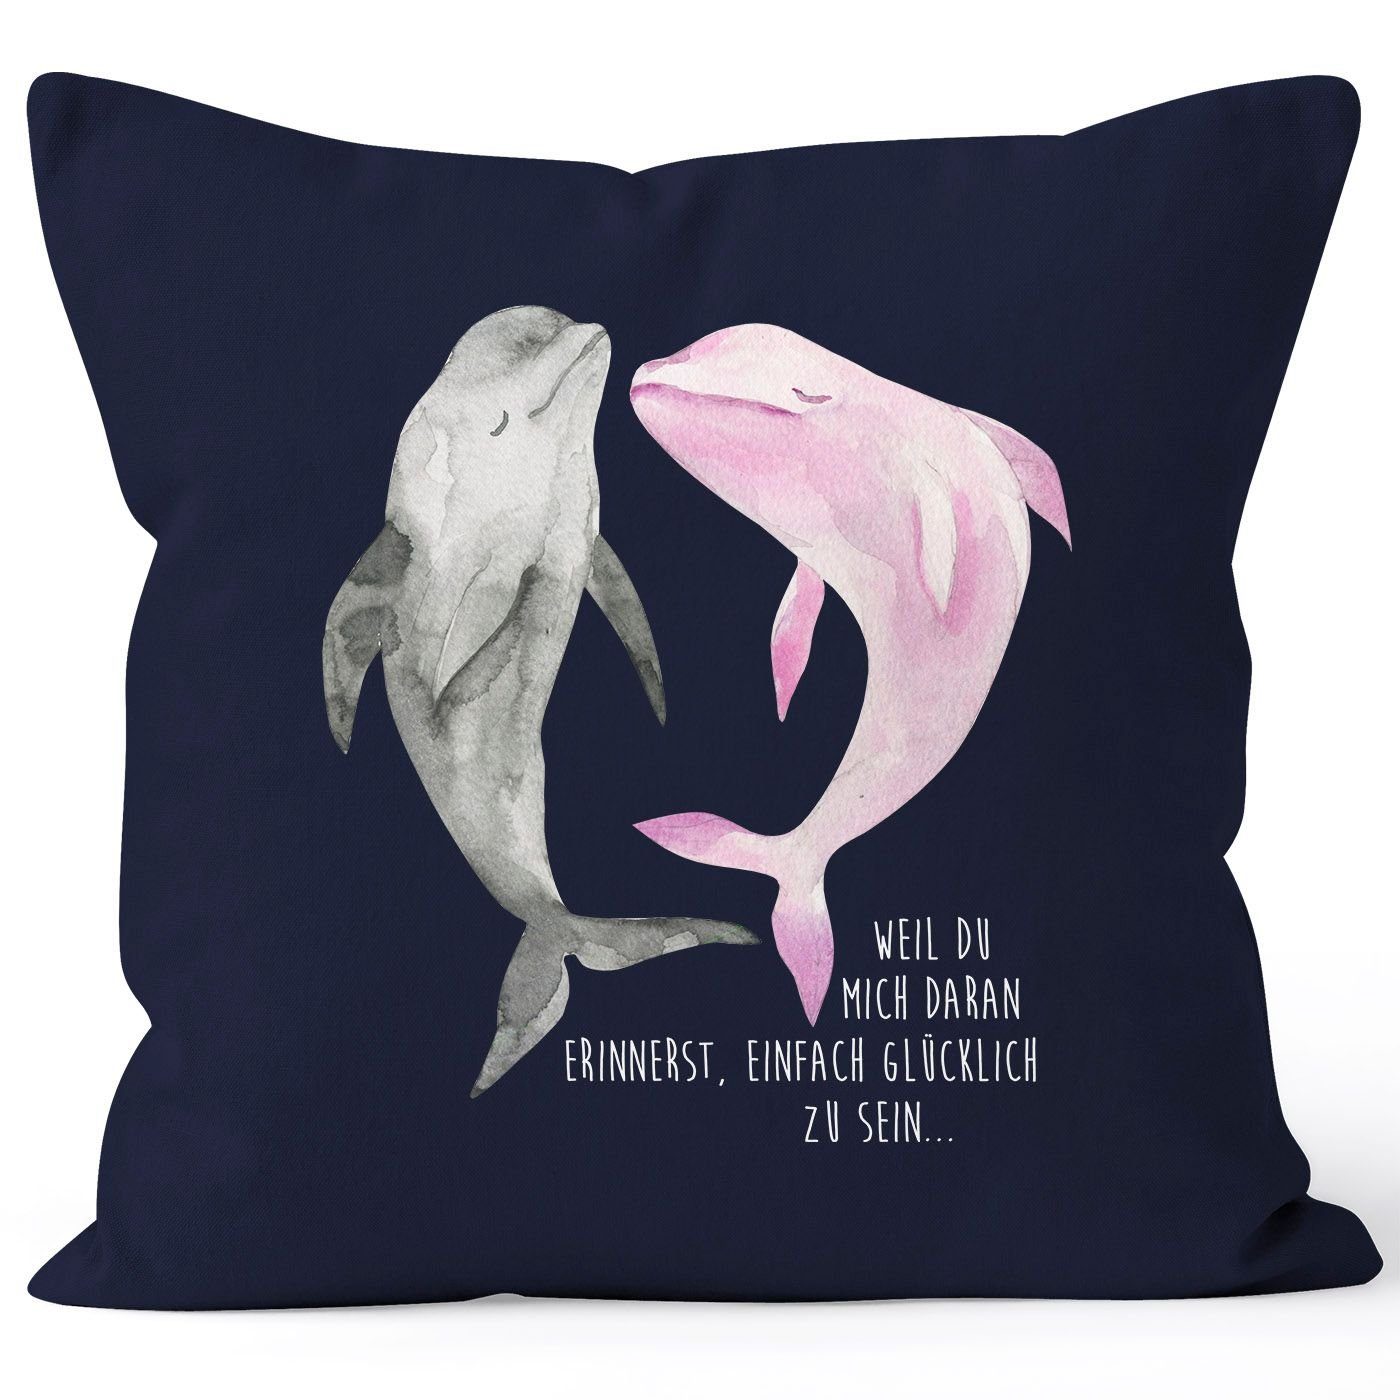 MoonWorks Dekokissen Kissen-Bezug weil du mich daran erinnerst einfach glücklich zu sein Delfin Delphin Liebe Spruch Kissen-Hülle Deko-Kissen Baumwolle MoonWorks® navy